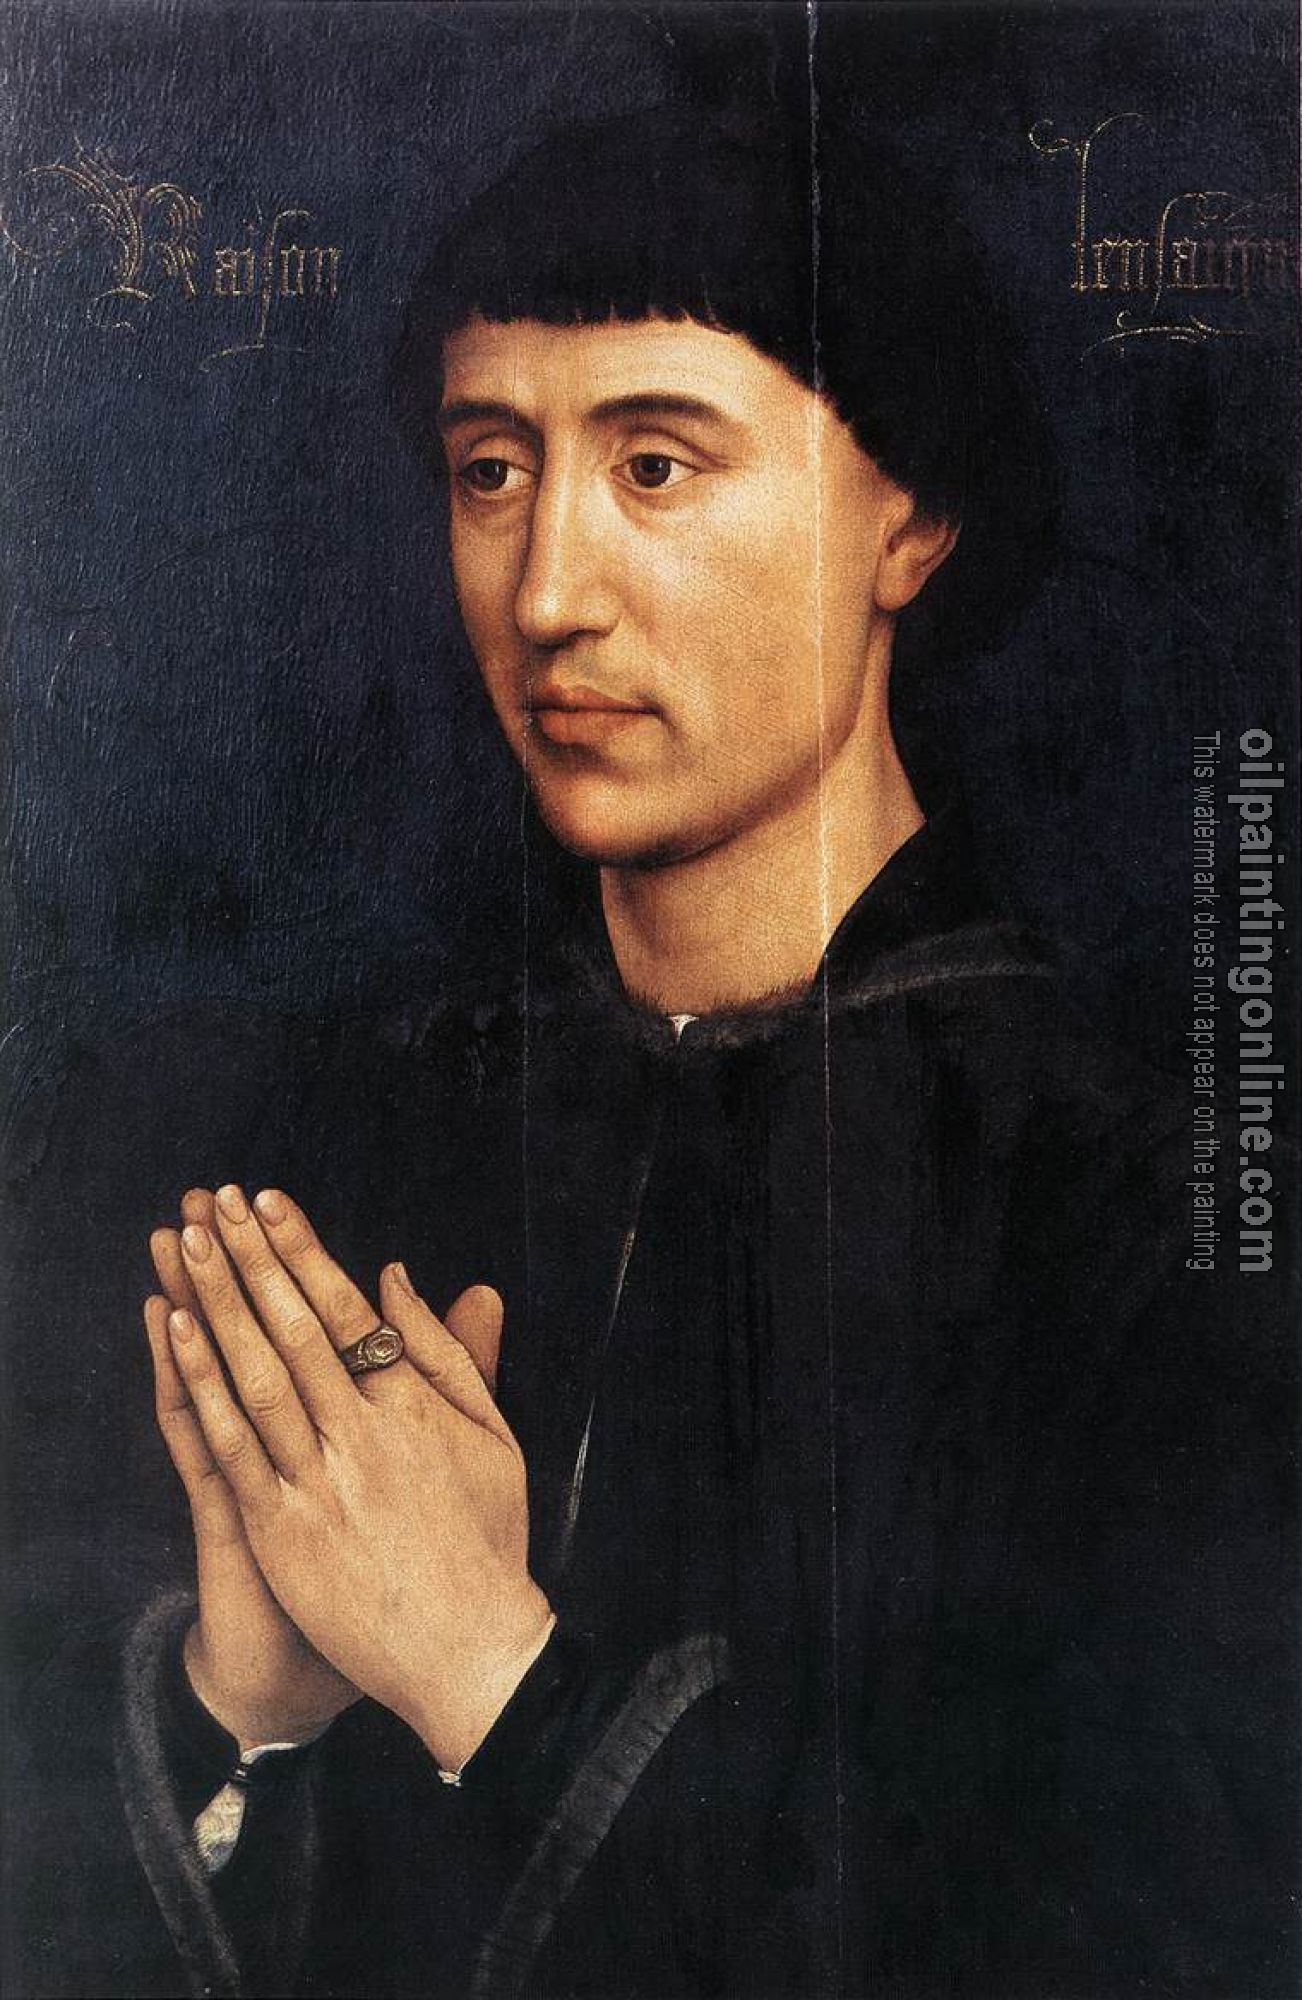 Weyden, Rogier van der - Portrait Diptych of Laurent Froimont-right wing